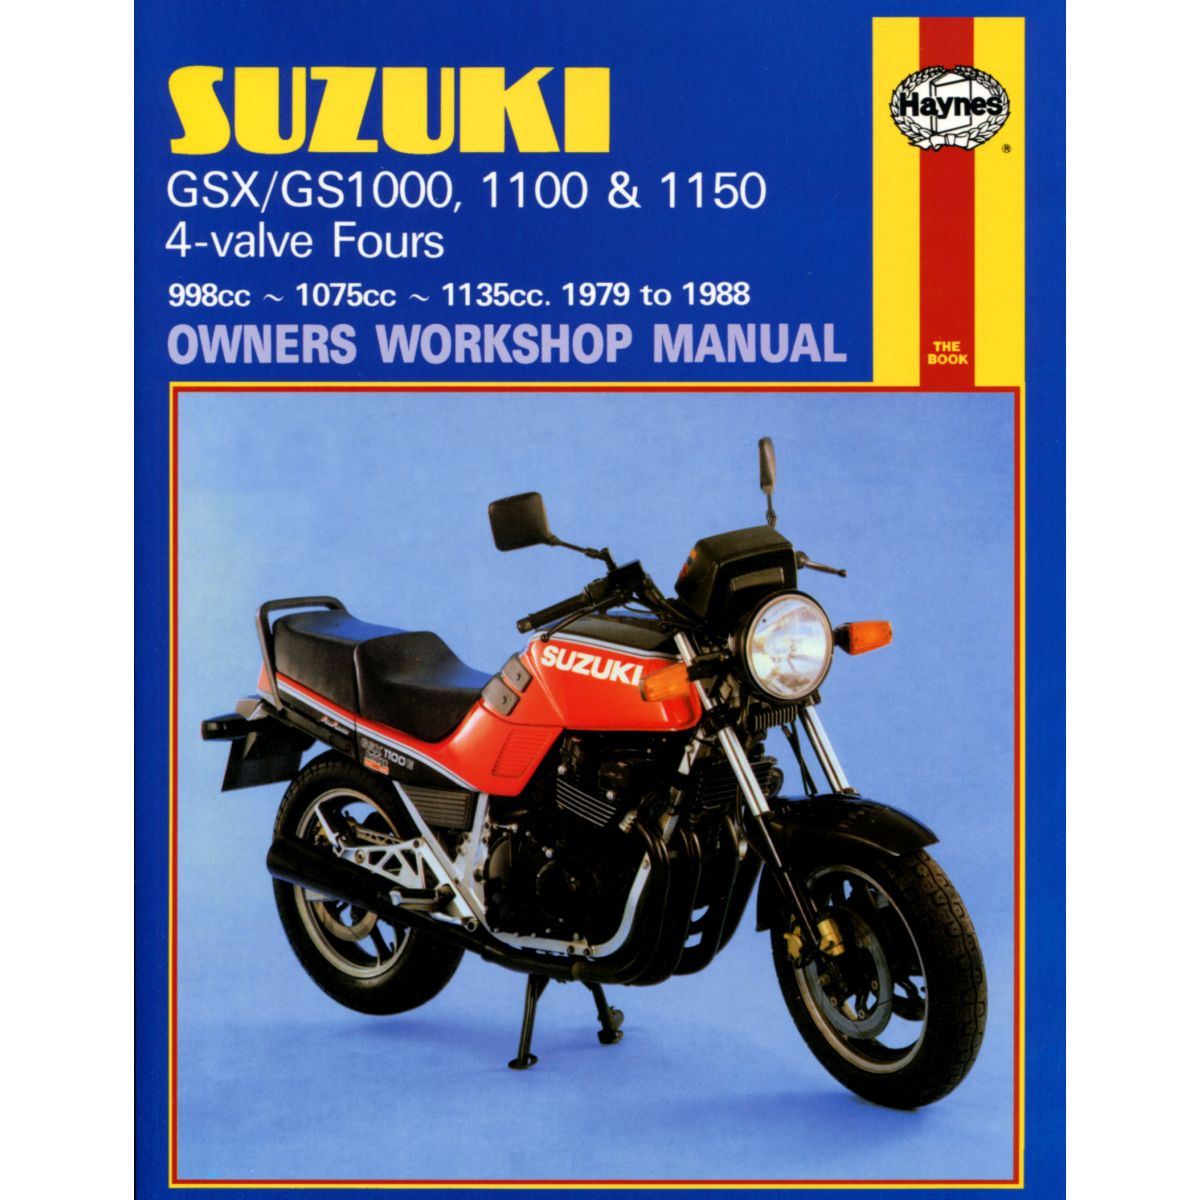 Manual Haynes for 1986 Suzuki GSX 1100 ES-G (16 Valve 